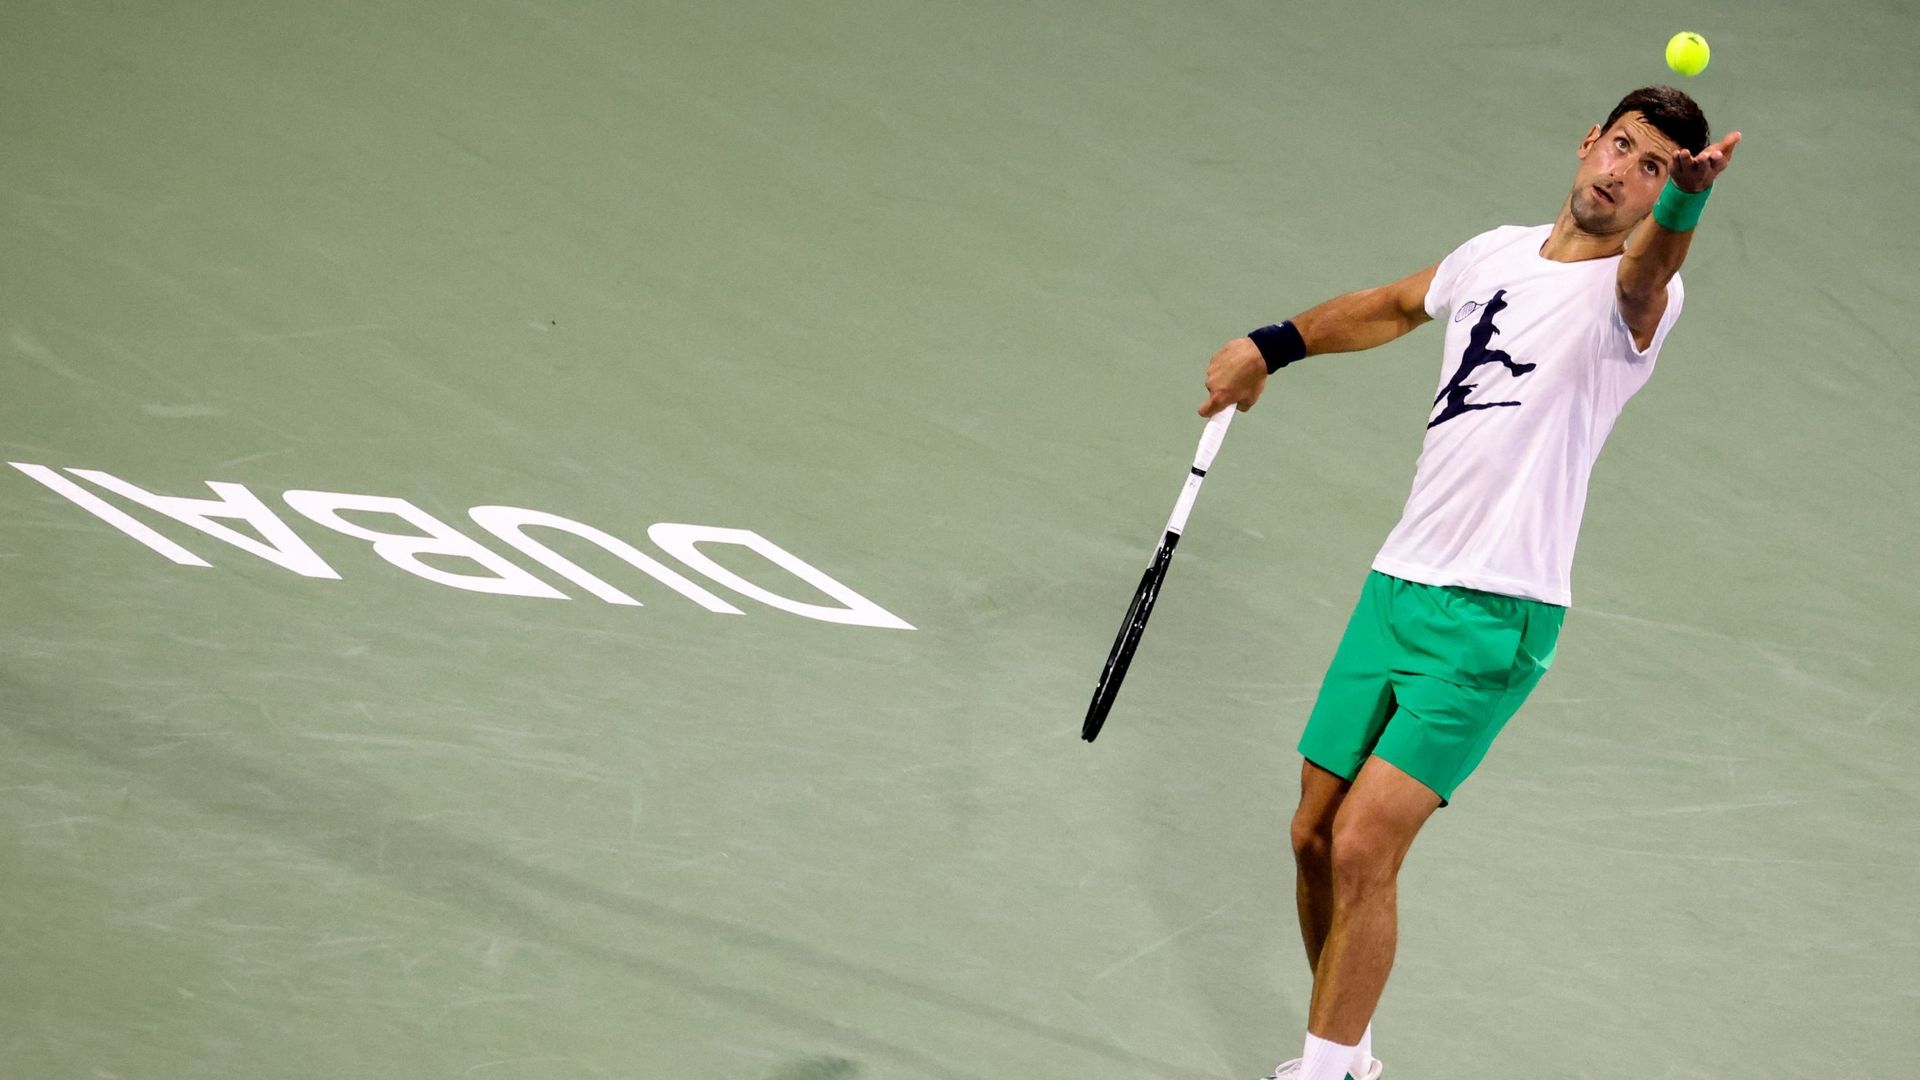 Novak Djokovic entame sa saison 2022 à Dubaï lundi avec l’espoir de conserver son fauteuil menacé de N.1 mondial, un mois après son expulsion d’Australie où il n’avait pu défendre ses chances lors du premier Grand Chelem de l’année, n’étant pas vacciné co